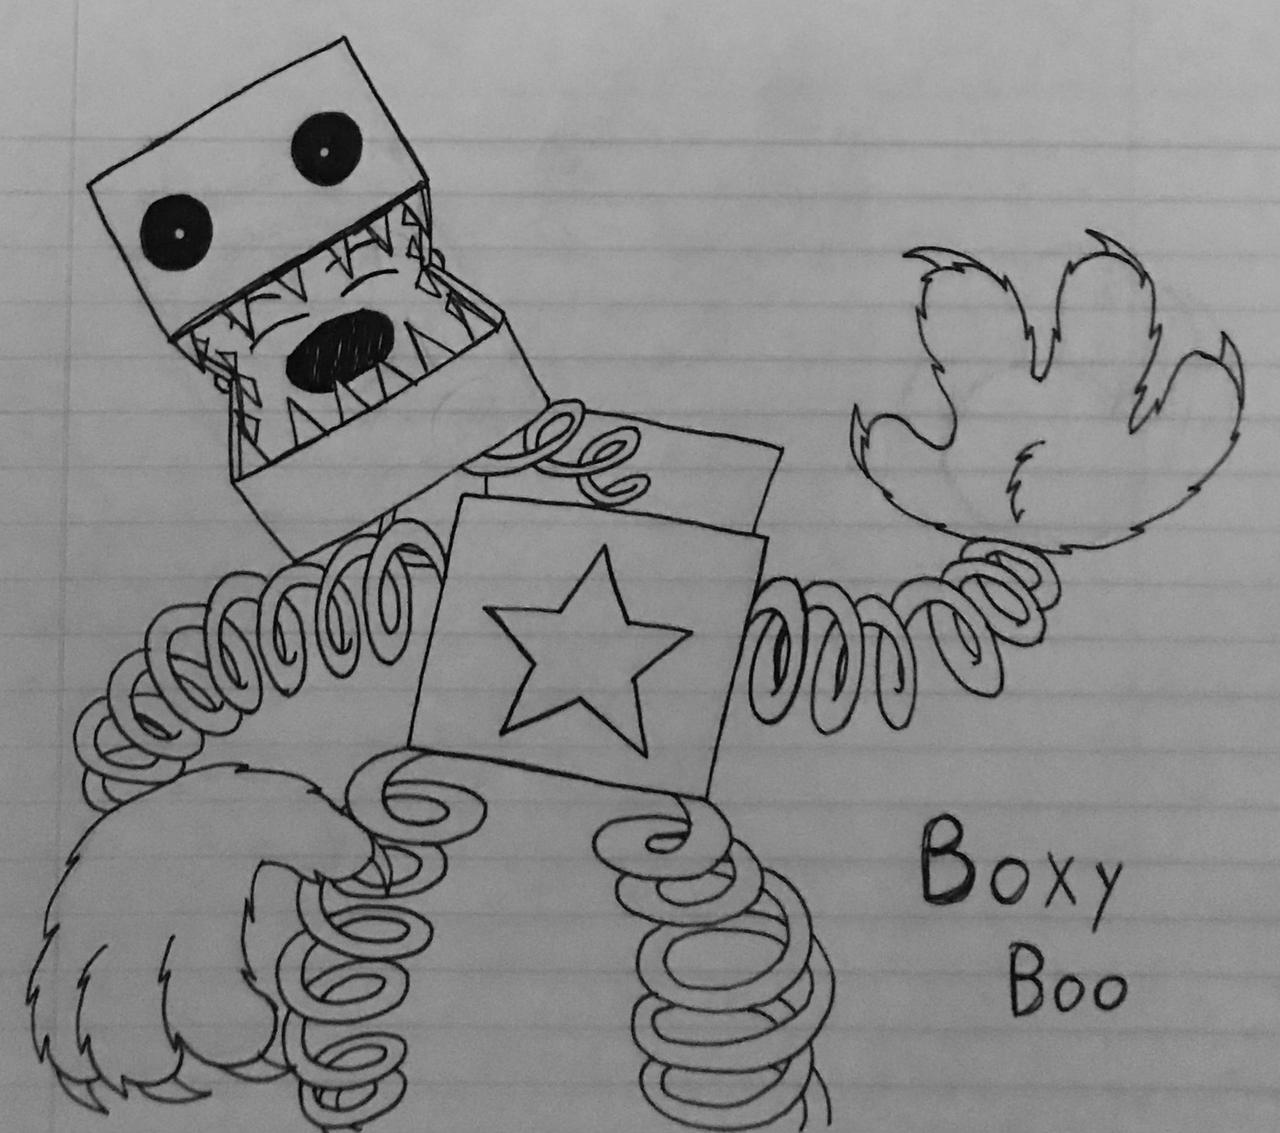 Boxy Boo Redesign : r/PoppyPlaytime